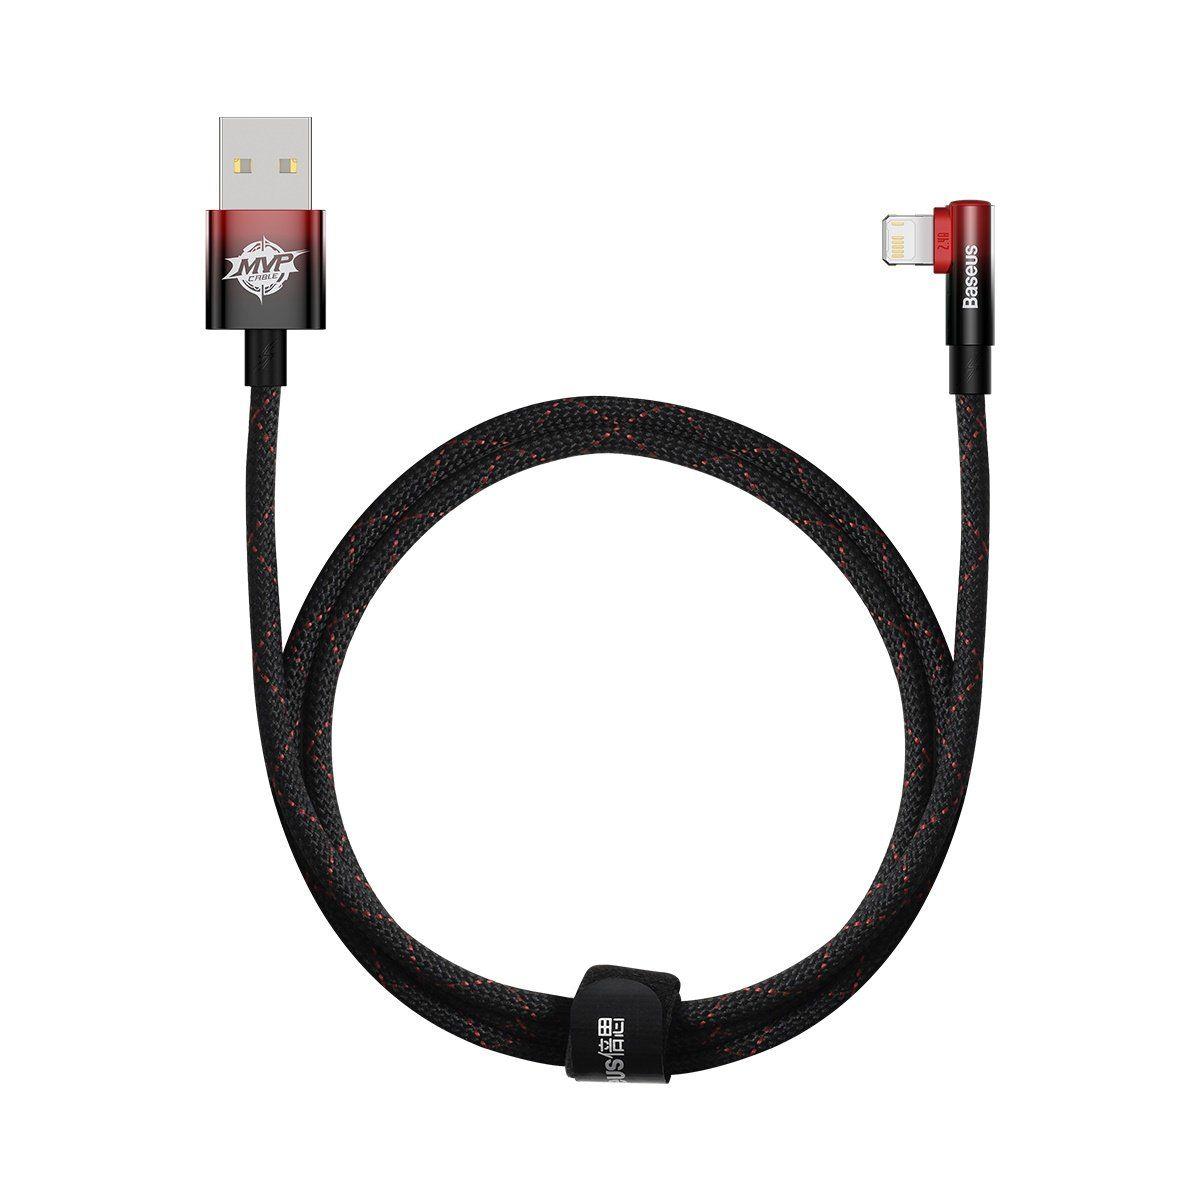 Baseus MVP 2 Elbow kątowy kabel przewód z bocznym wtykiem USB / Lightning 1m 2.4A czerwony (CAVP000020)